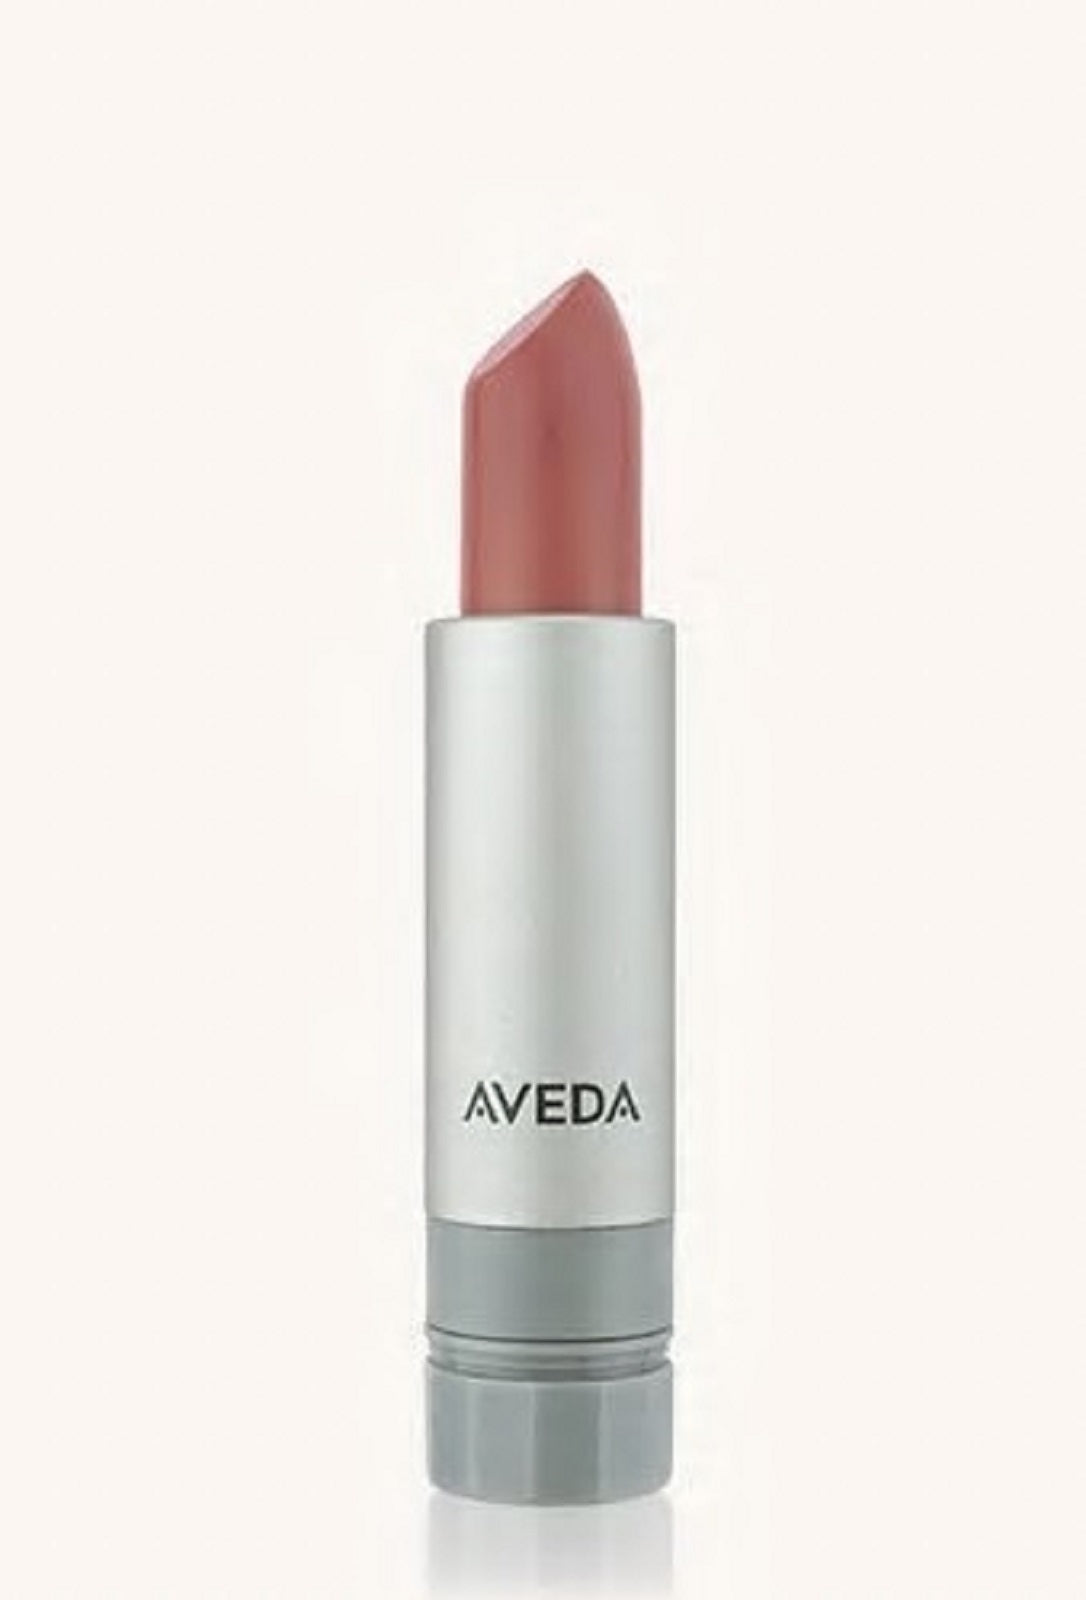 AVEDA new nib lipstick lip color SANDSTONE 941 Nourish-Mint discontinued